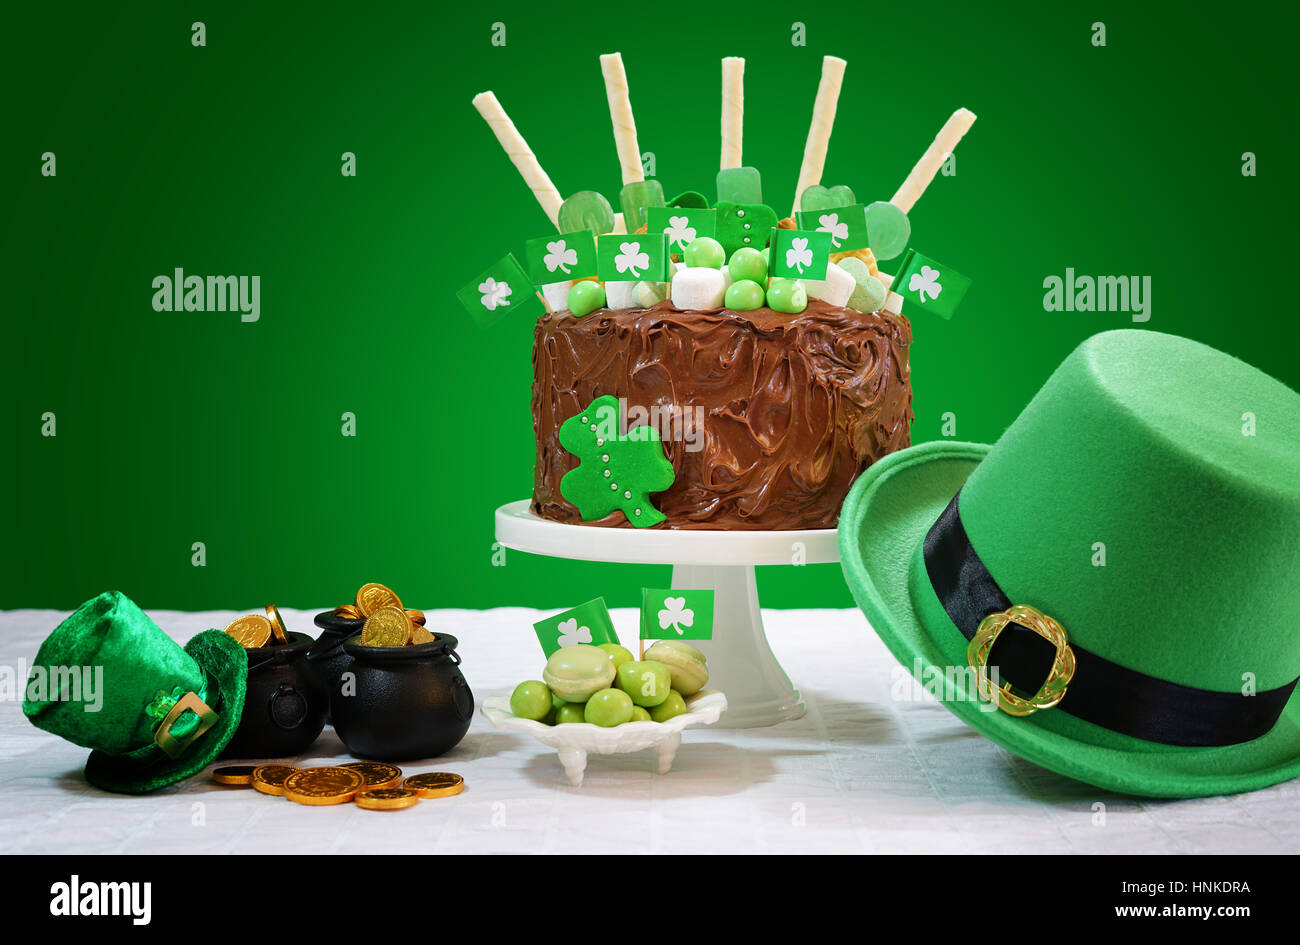 Feliz Día de San Patricio, el 17 de marzo, el partido verde y blanco tabla con impedimento tarta de chocolate decorada con dulces, galletas y shamrock banderas. Foto de stock